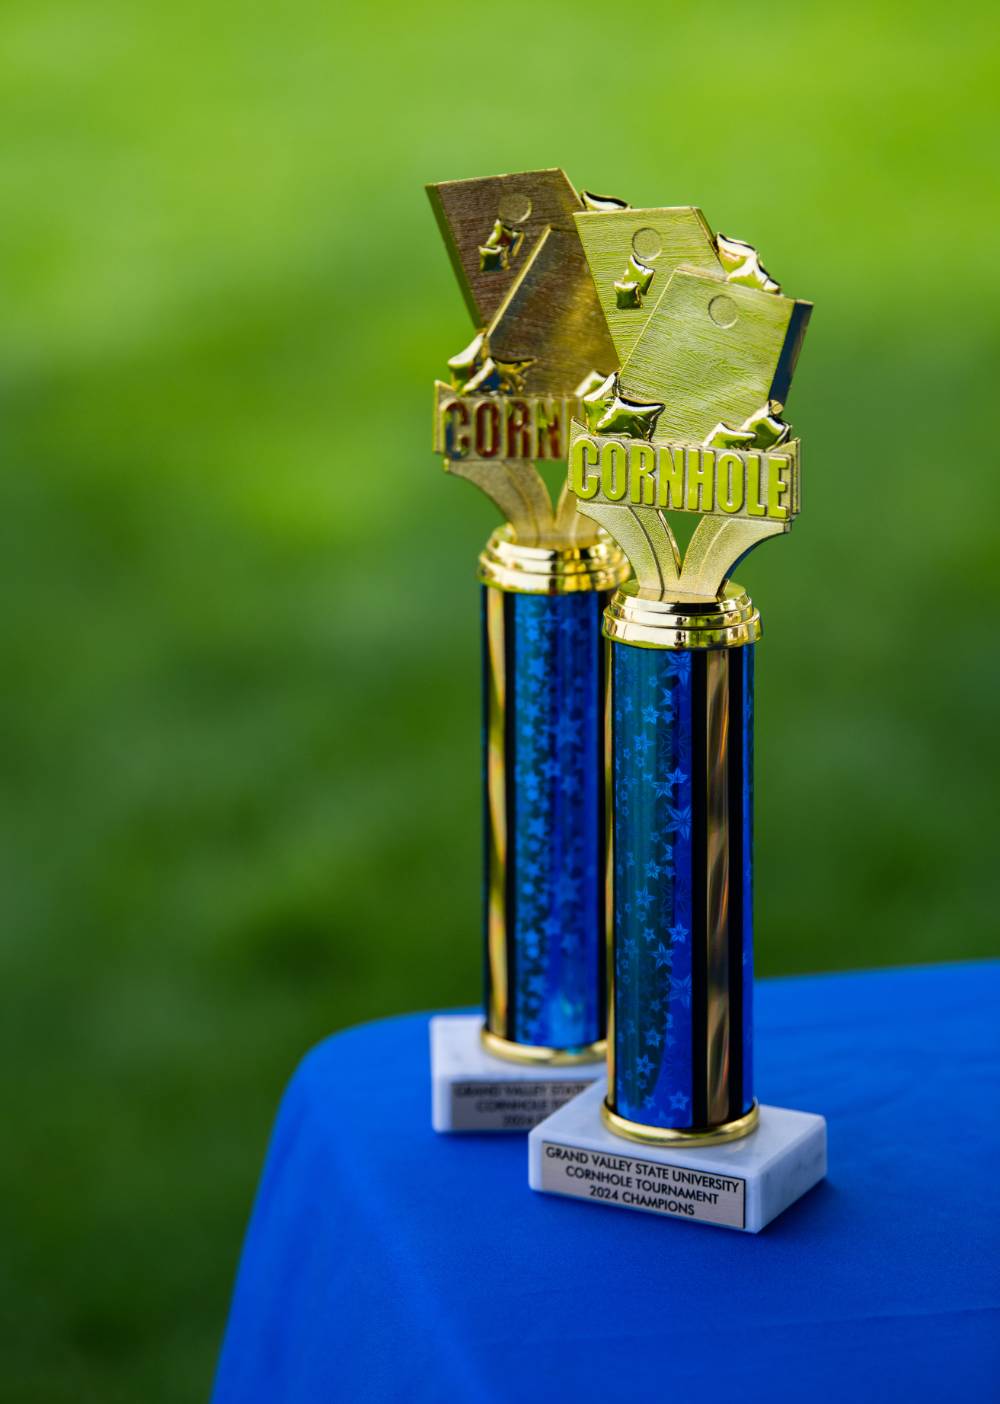 Cornhole Tournament trophies